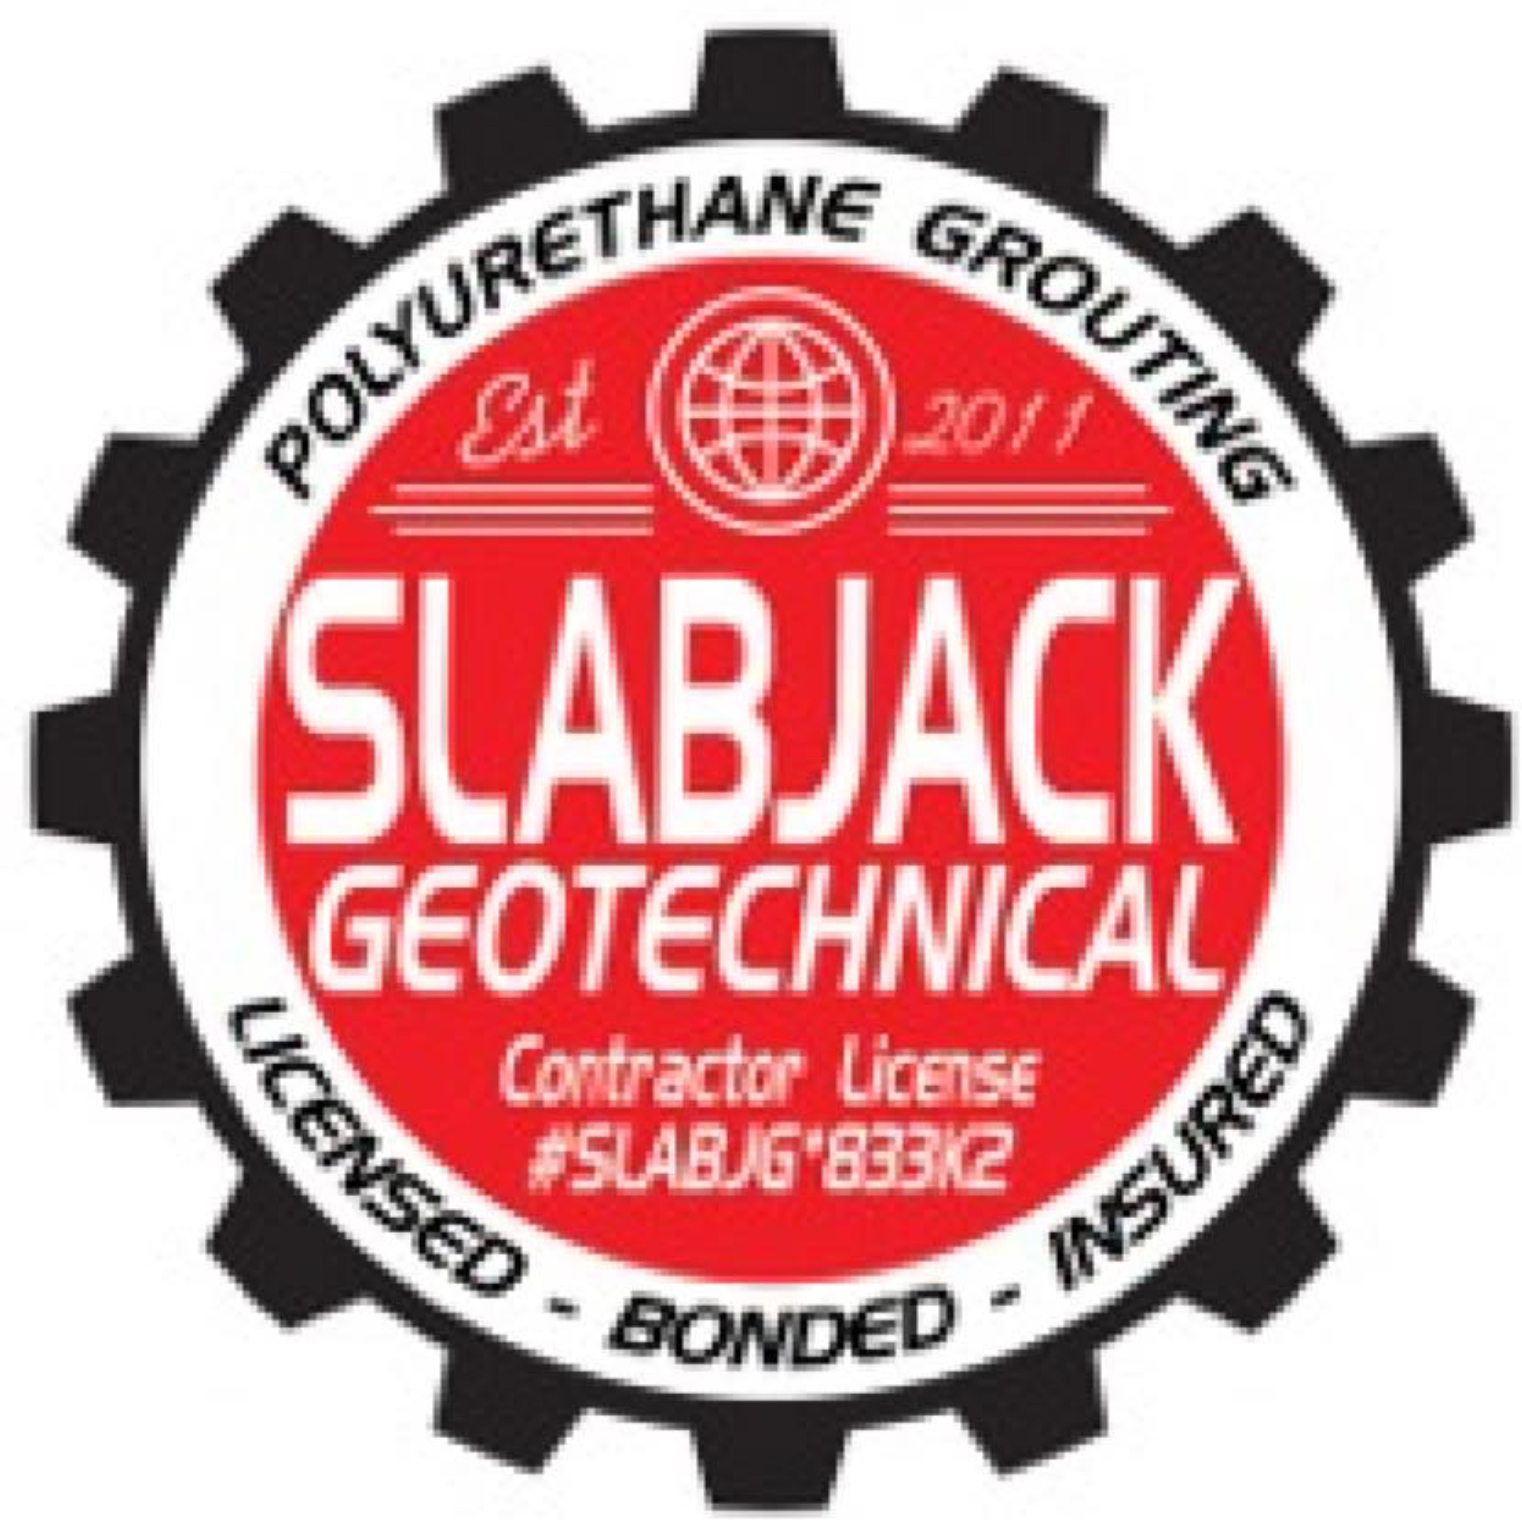 Slabjack Geotechnical Logo